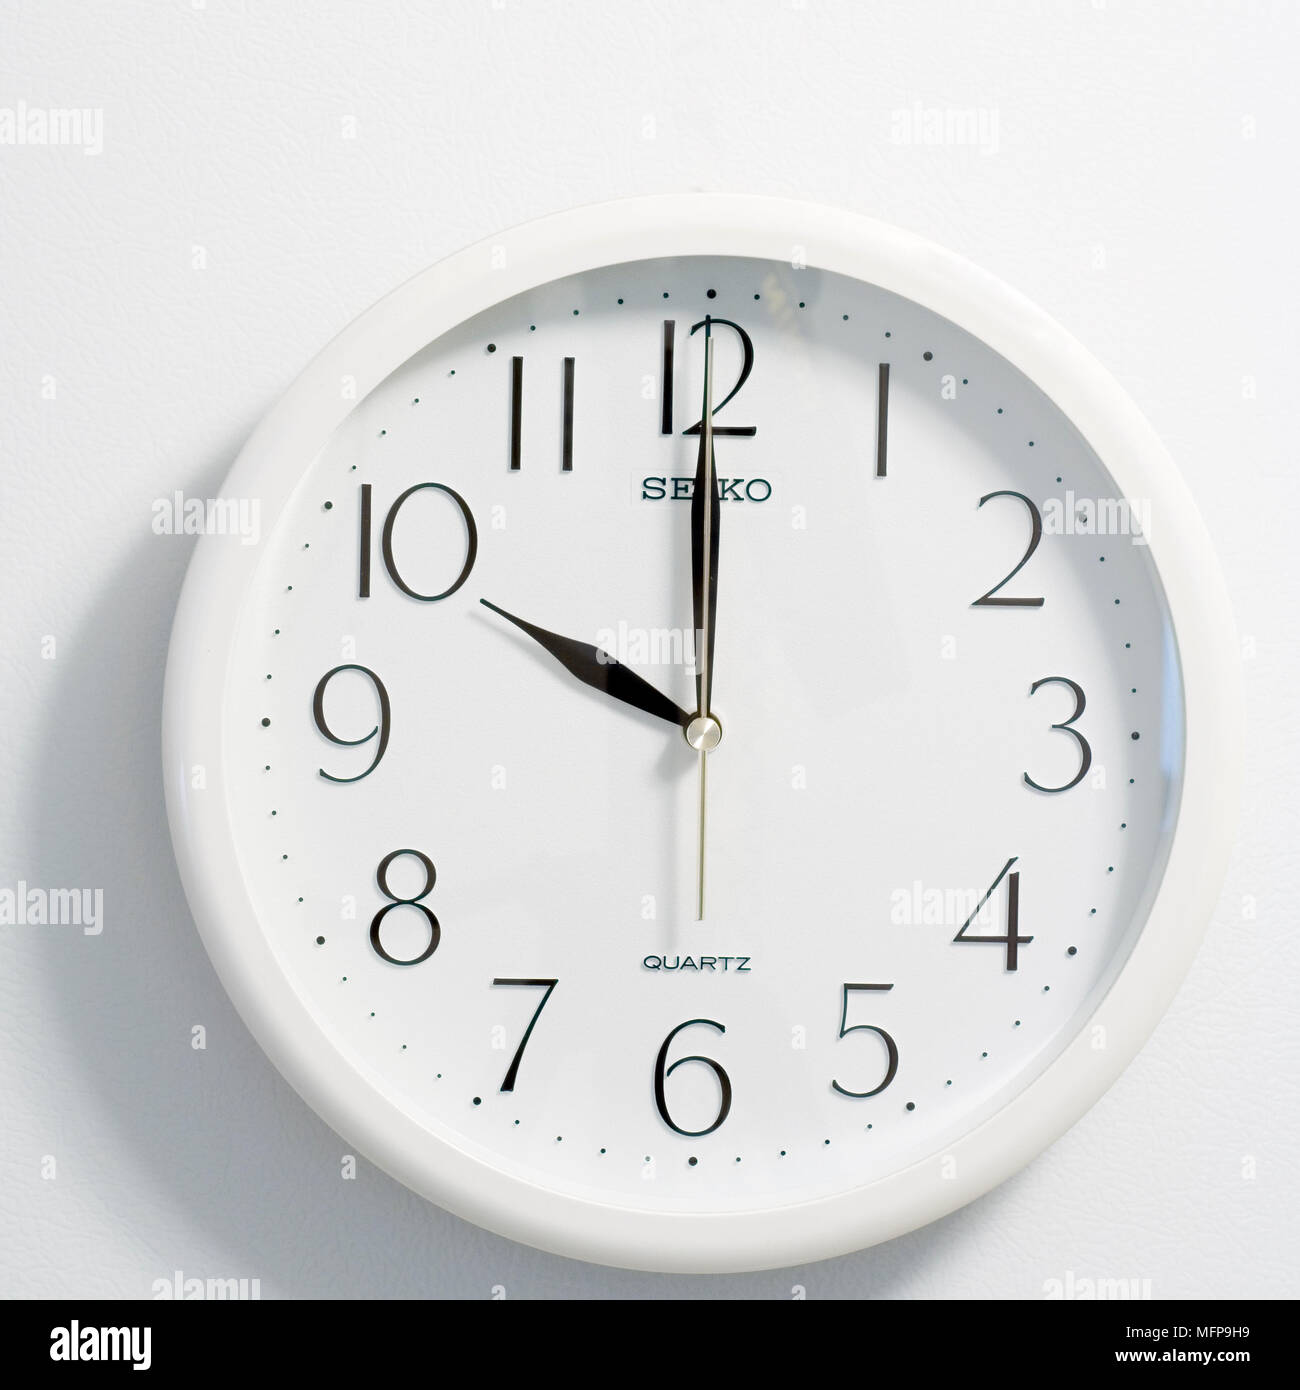 Nahaufnahme des Gesichts des modernen clock Stil, runde weiße und schwarze Zifferblatt zur Zeit zehn Uhr Stockfoto